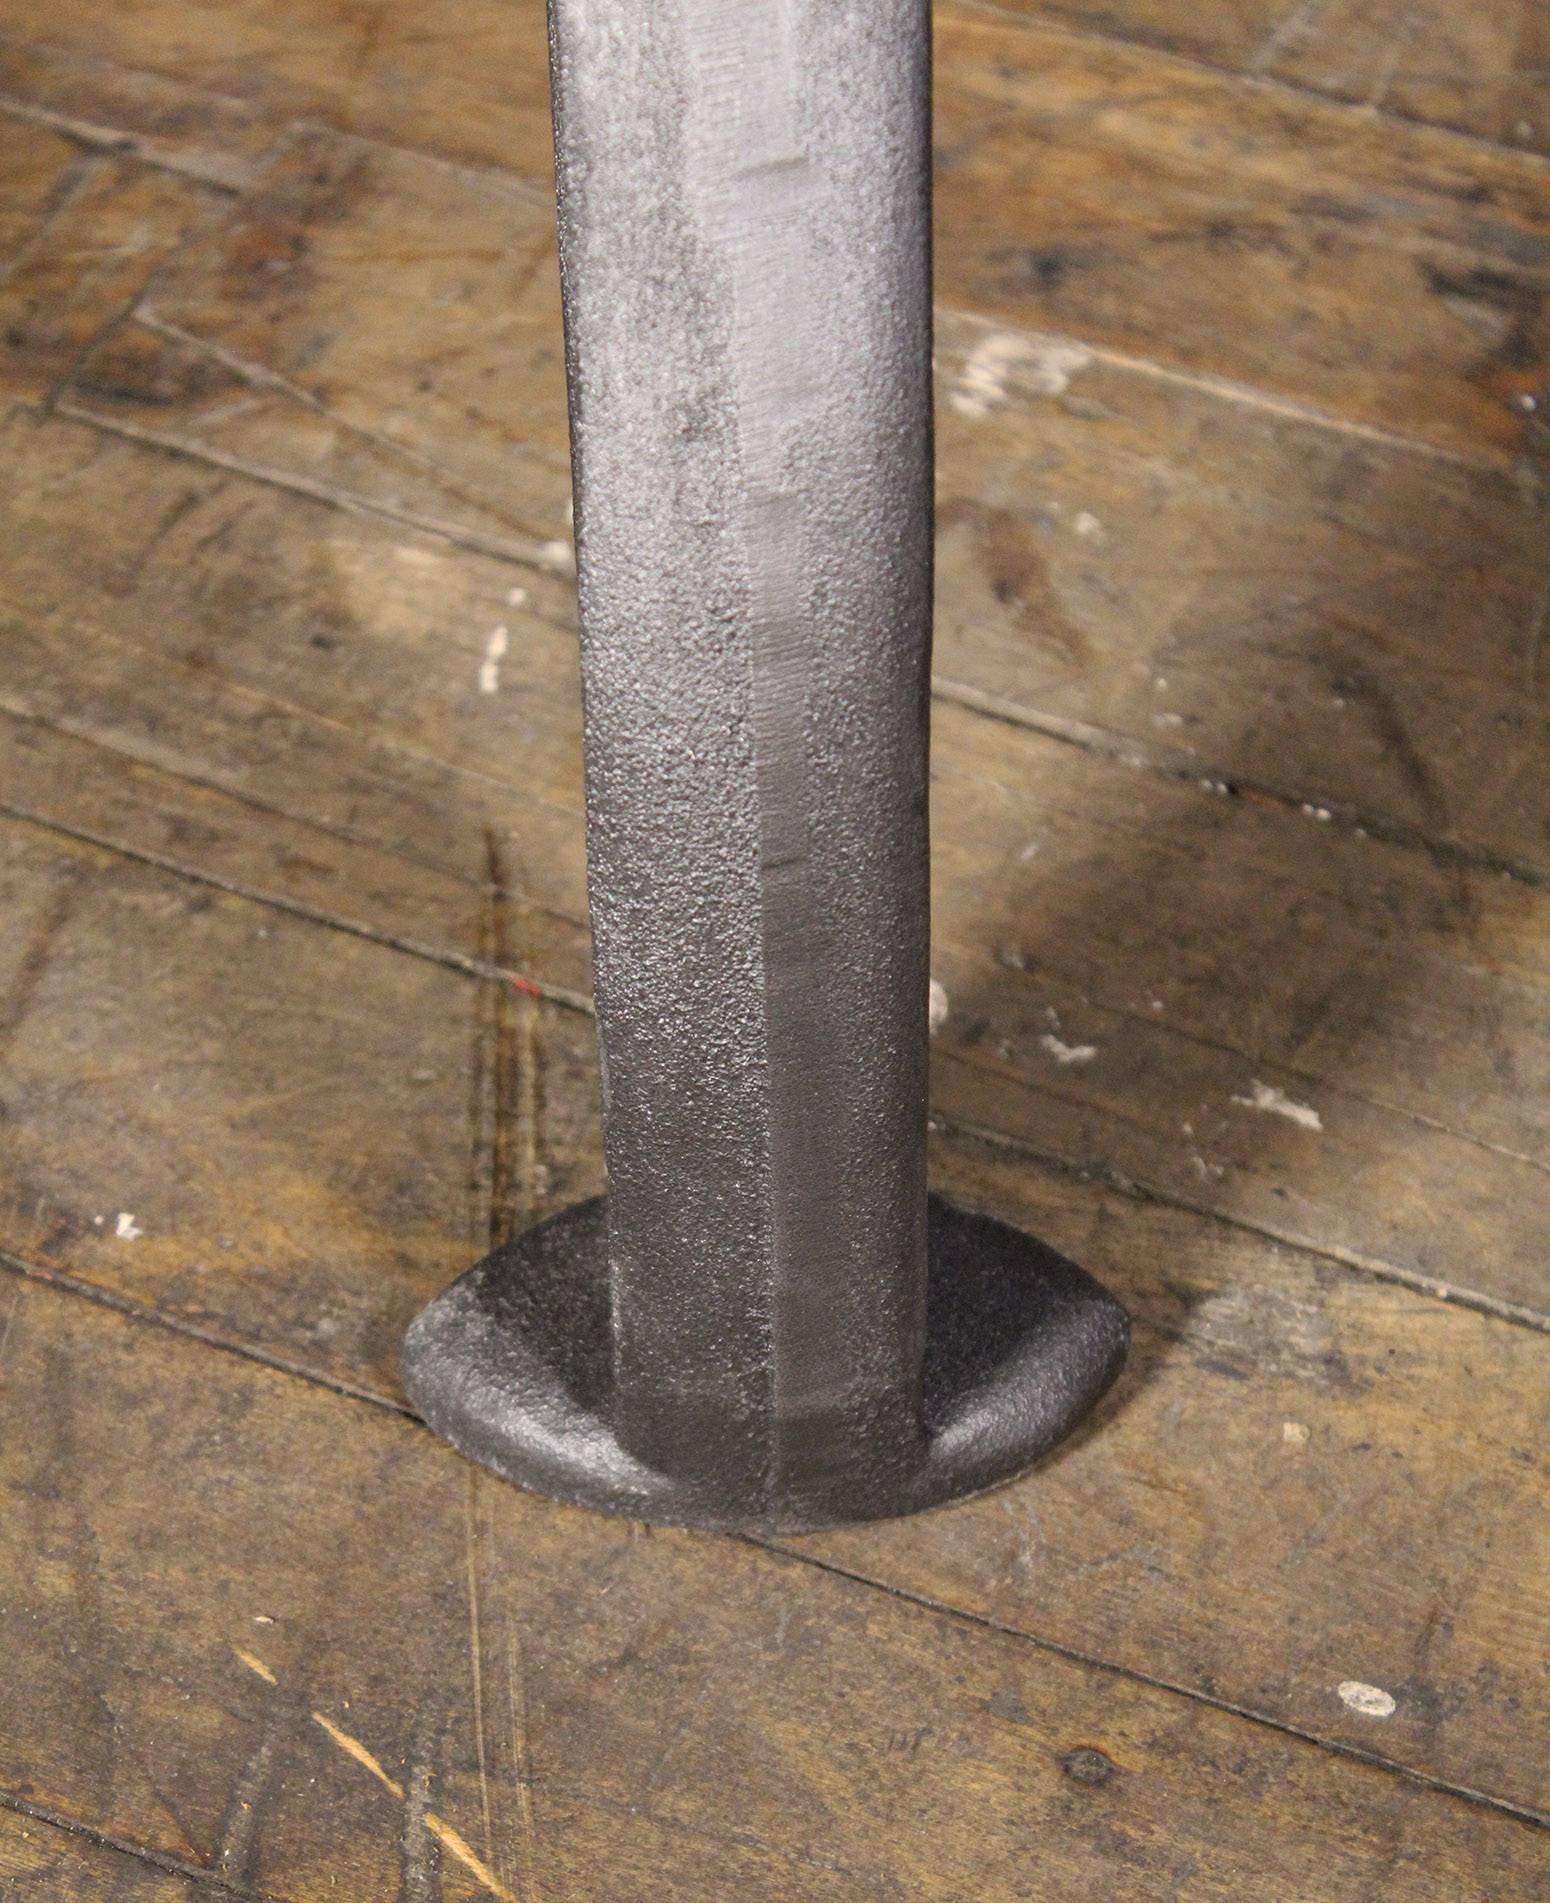 Steel Bespoke Walnut Desk with Cast Iron Legs Industrial Modern Work Custom Table For Sale